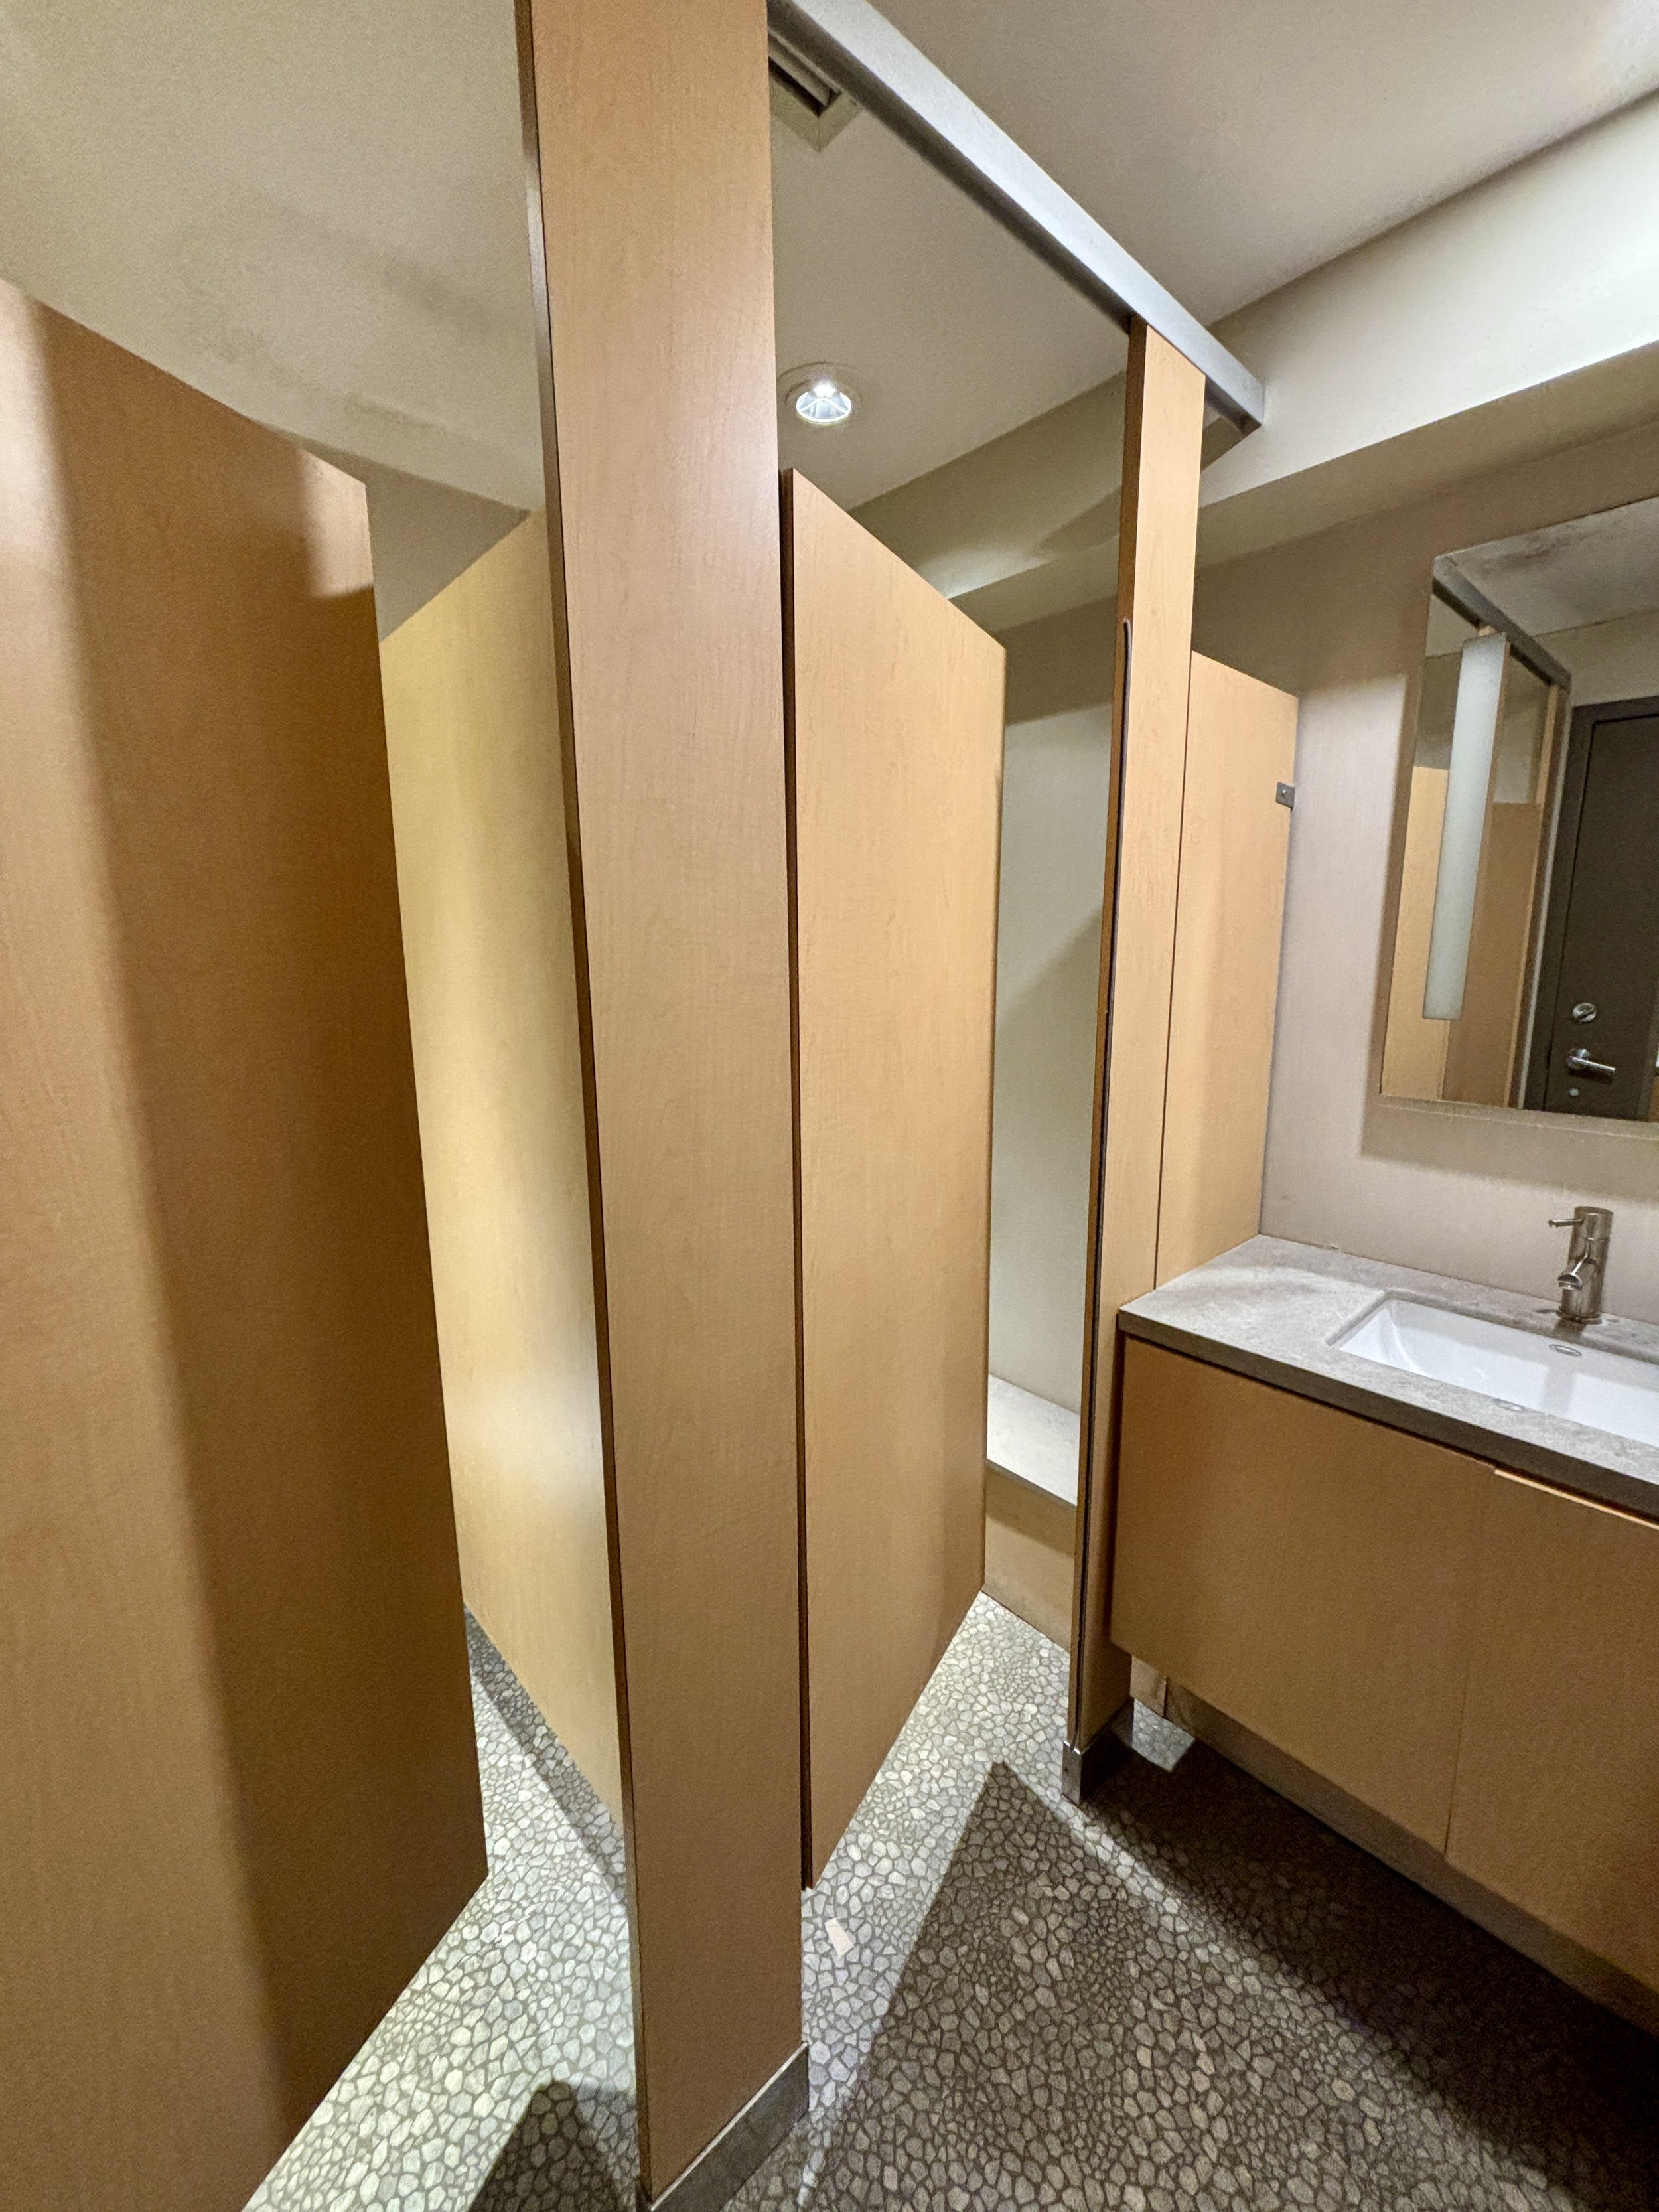  Bathroom Cubicle Door - 1